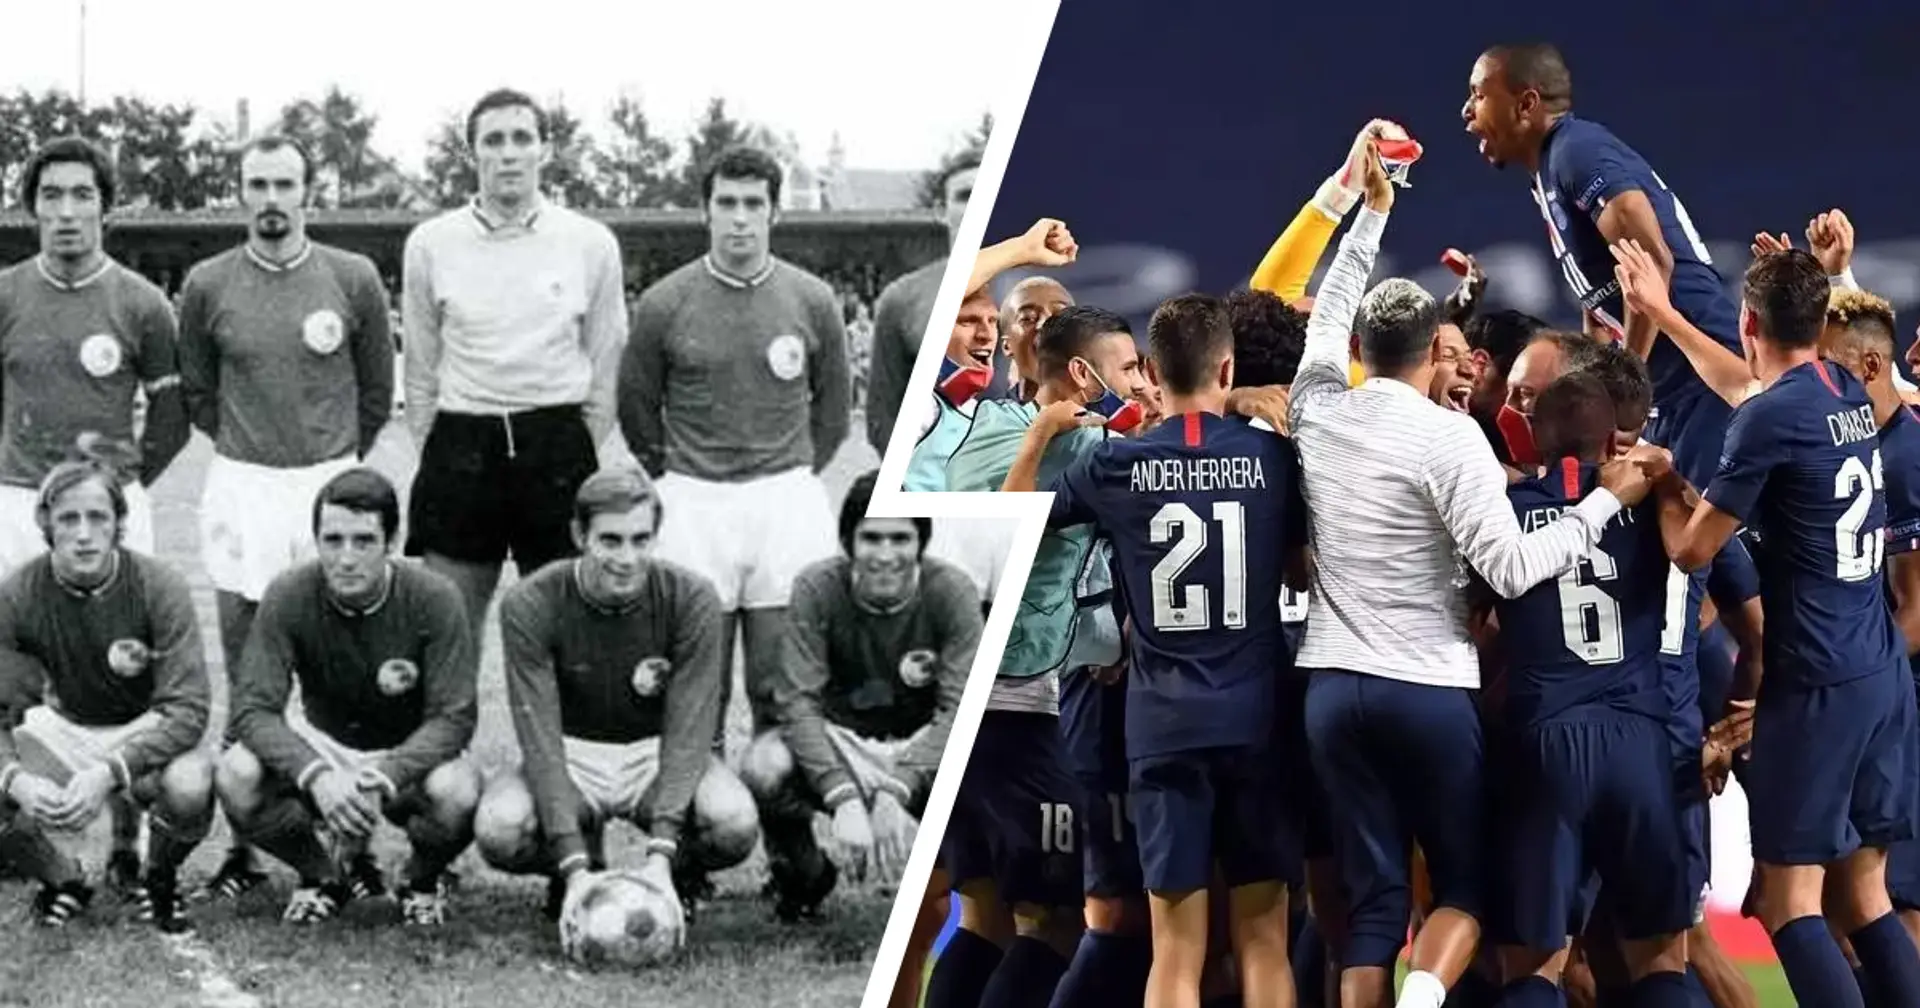 Le 23 Août 1970, 50 ans jour pour jour, le PSG jouait son premier match officiel